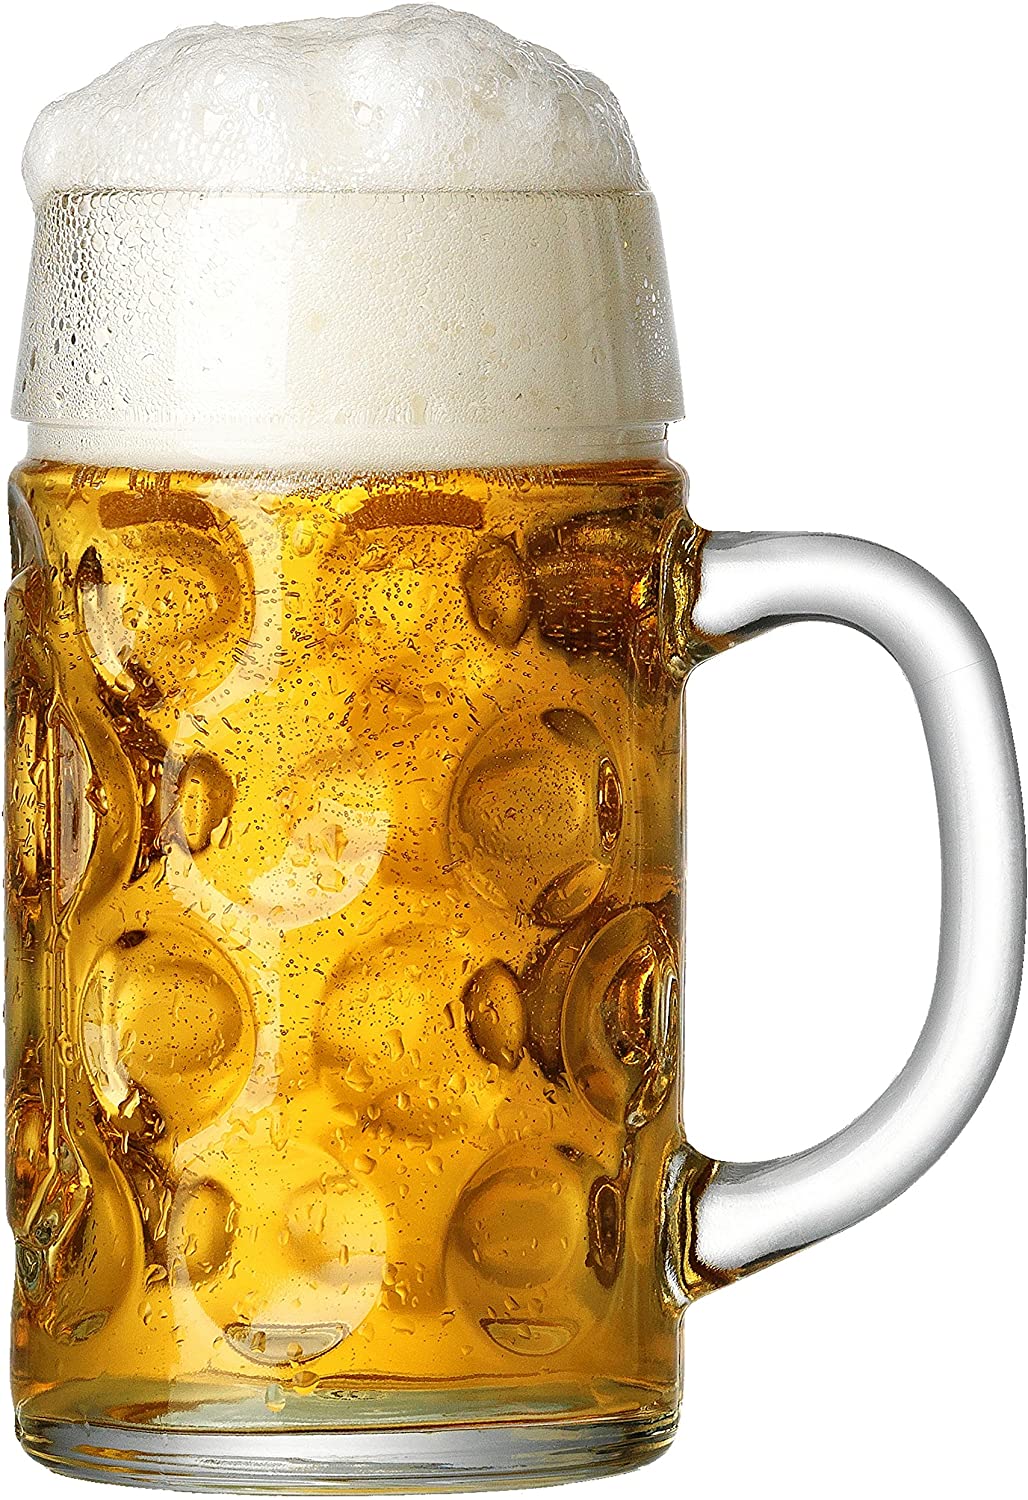 Ritzenhoff & Breker 118896 Beer Glass 1 L with Marking